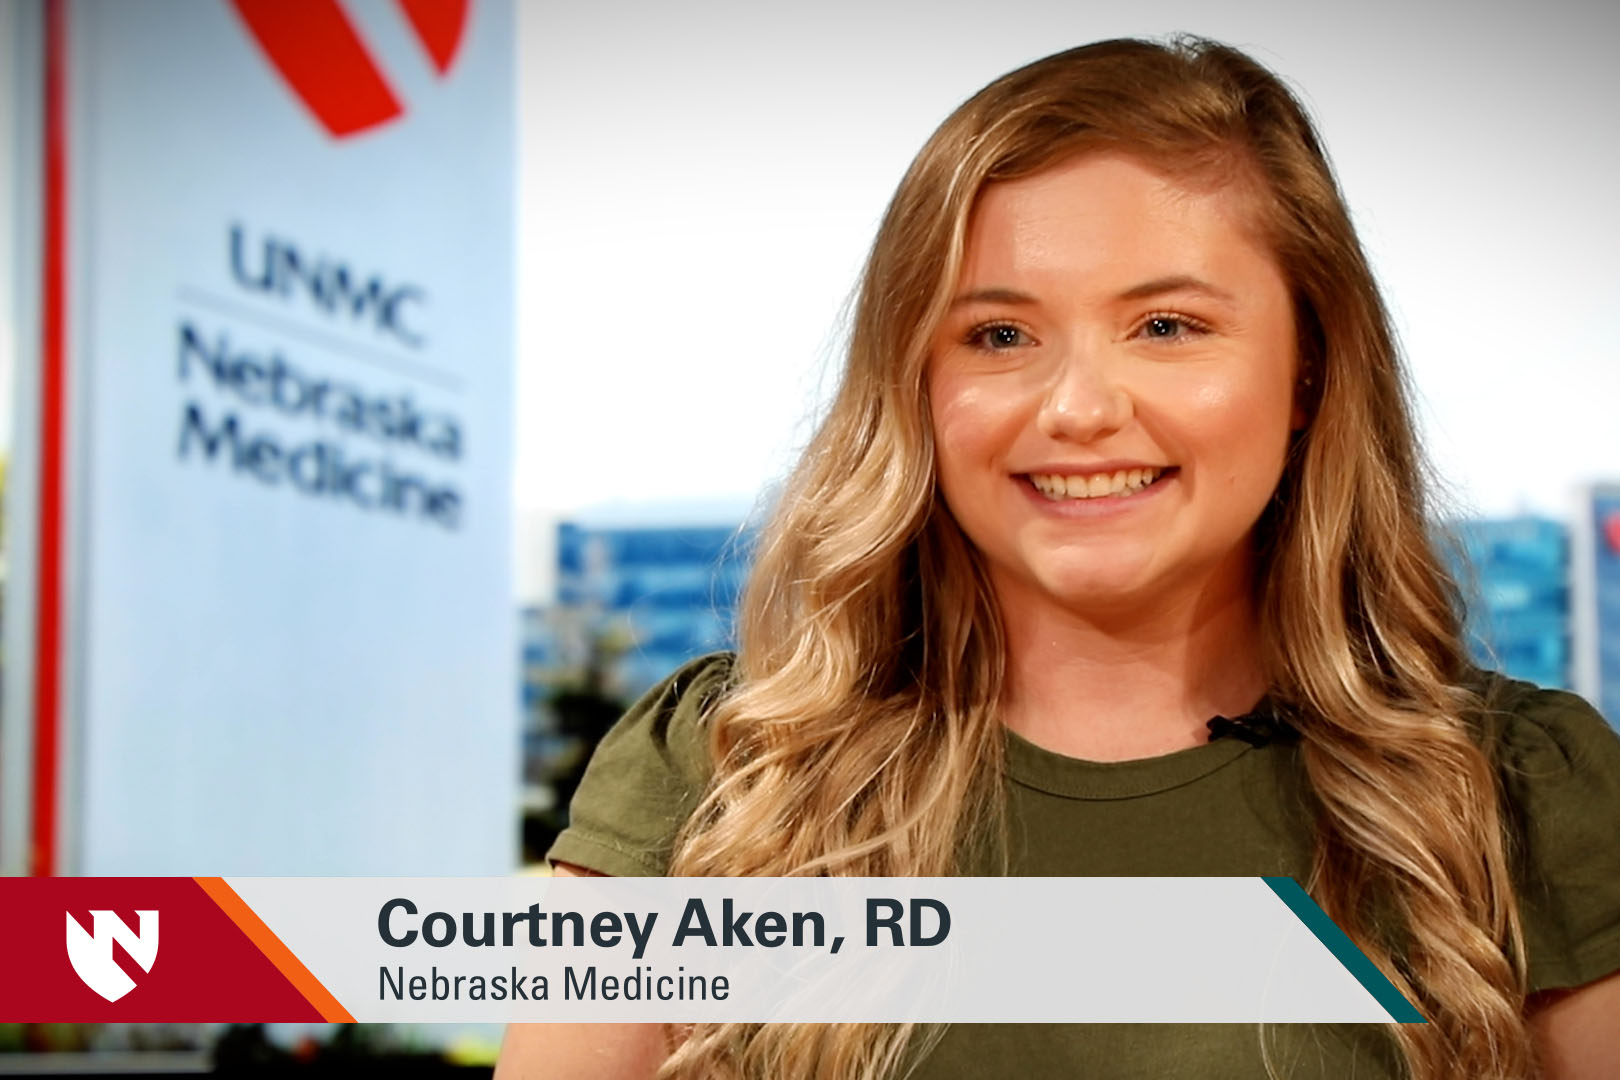 ASK UNMC! Courtney Aken, RD, Nebraska Medicine